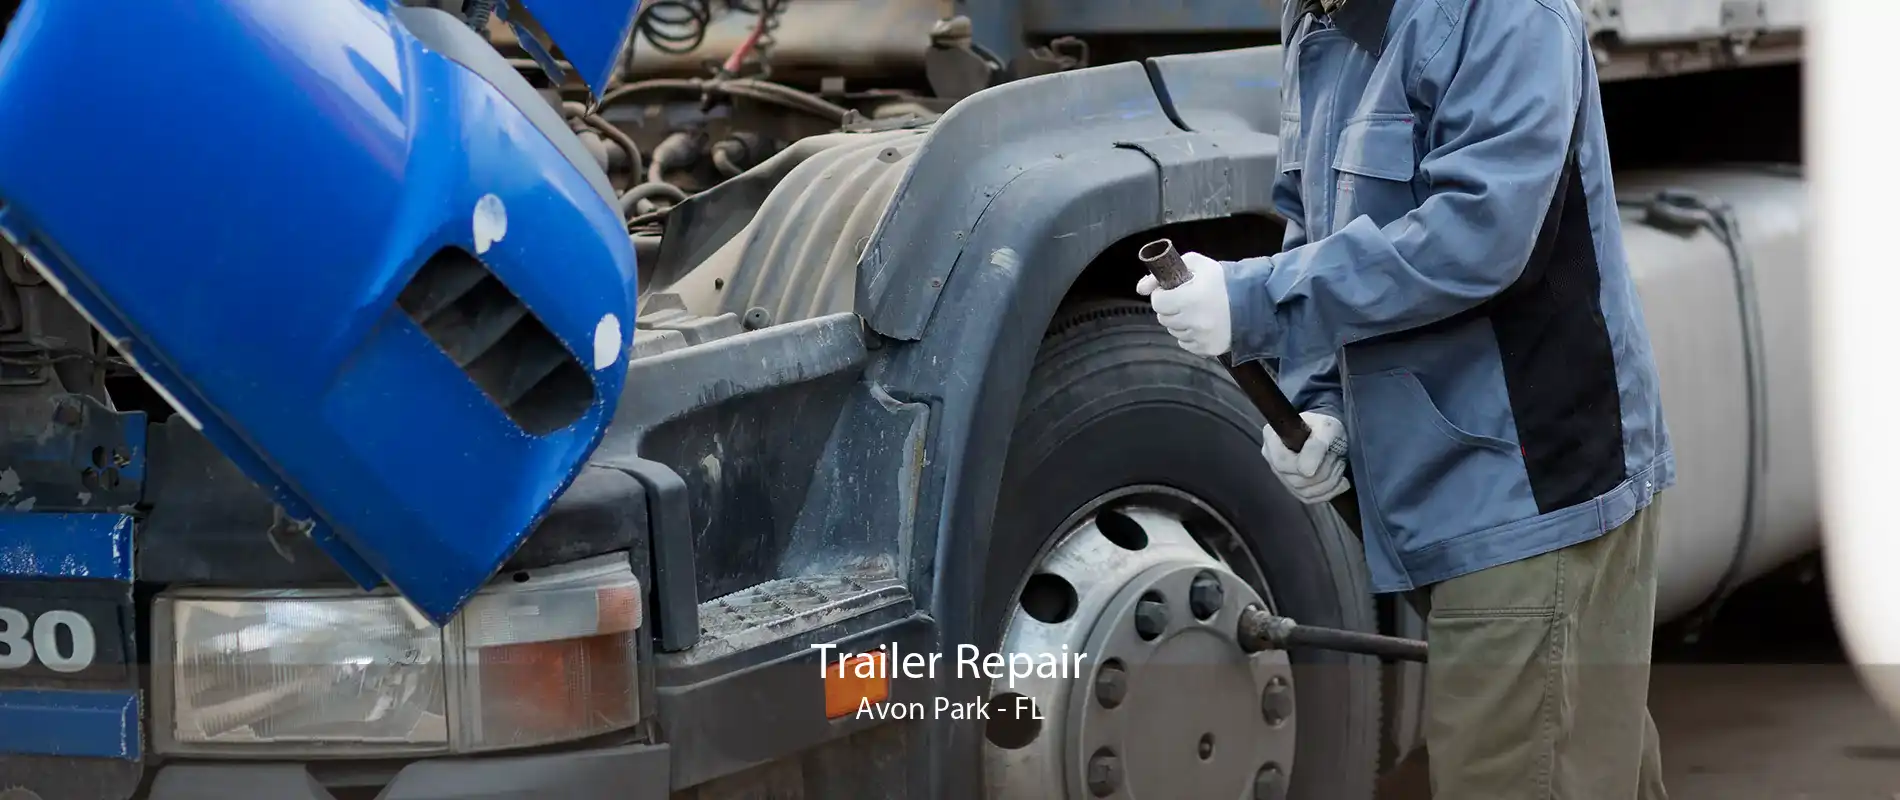 Trailer Repair Avon Park - FL